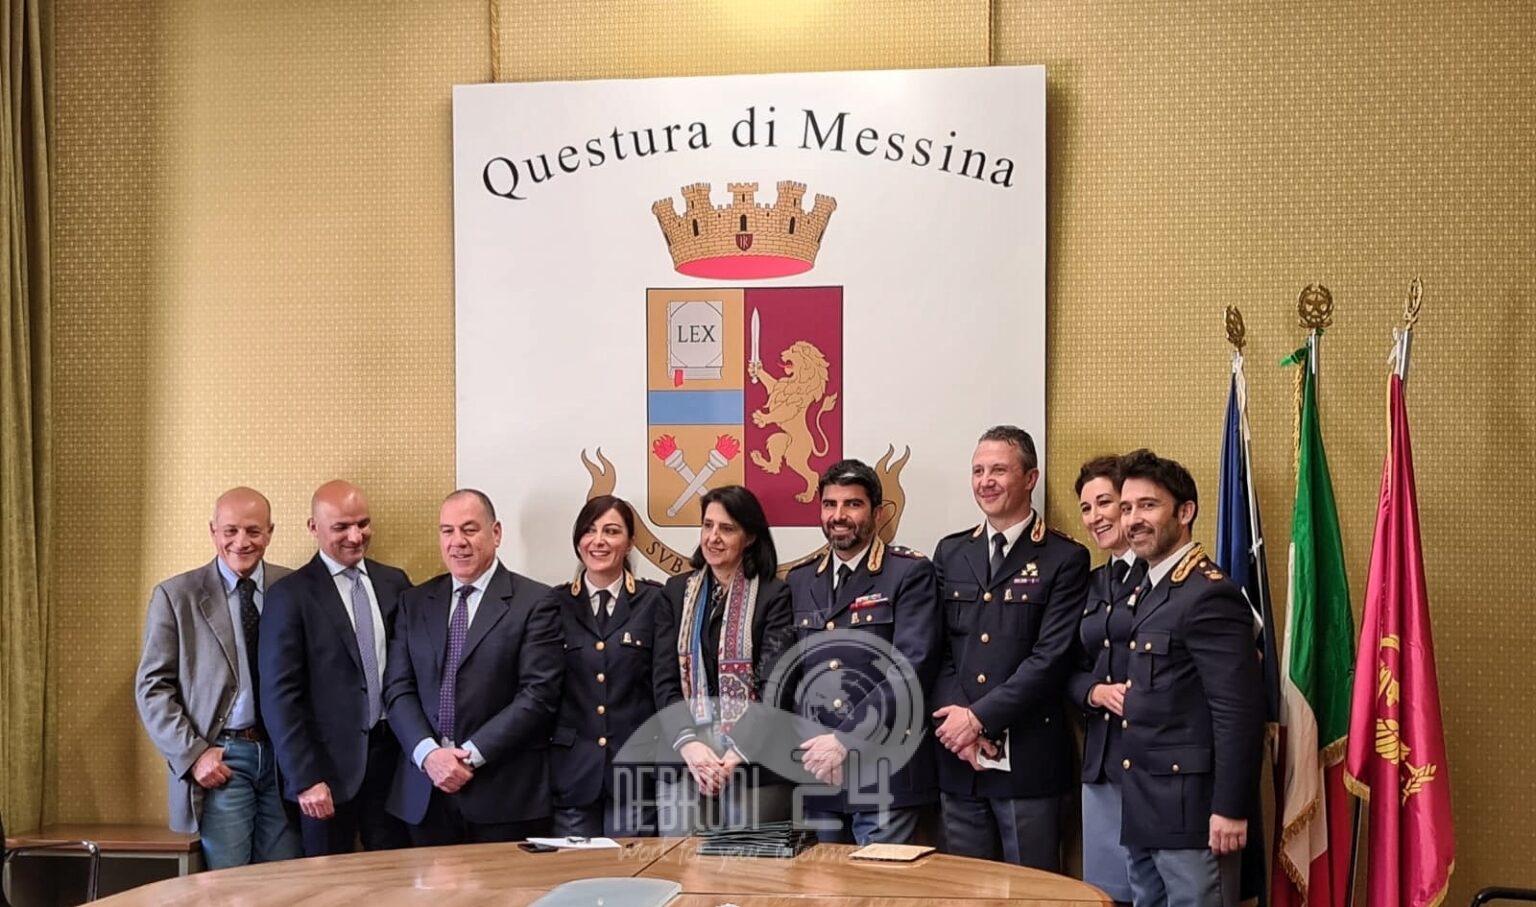 Messina – Questura:  Due nuovi vice questori: i dirigenti Di Blasi (Patti) e Alioto (Capo d’Orlando)